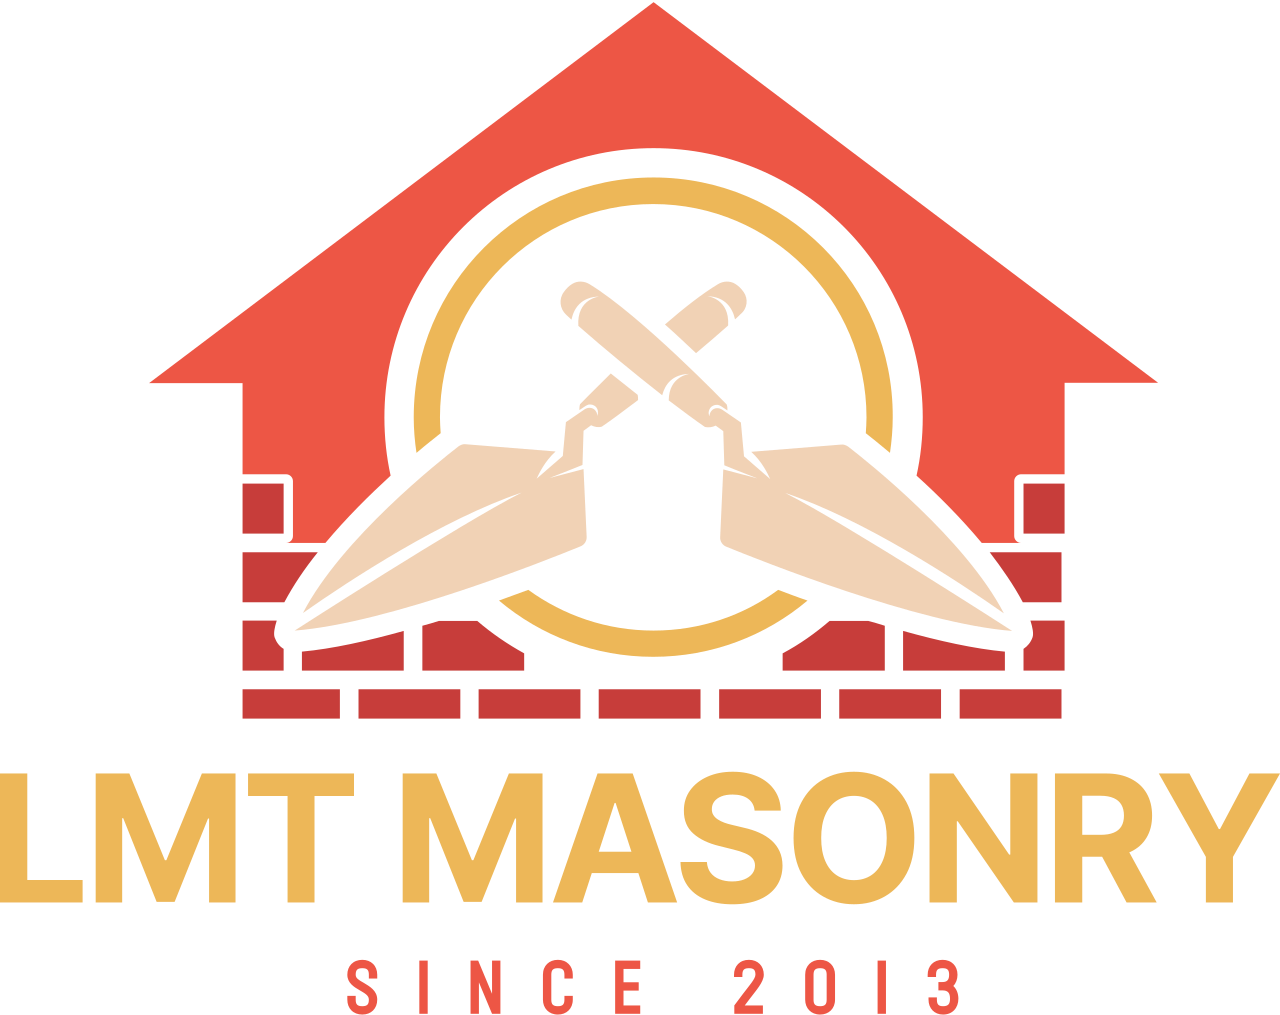 LMT Masonry 's logo